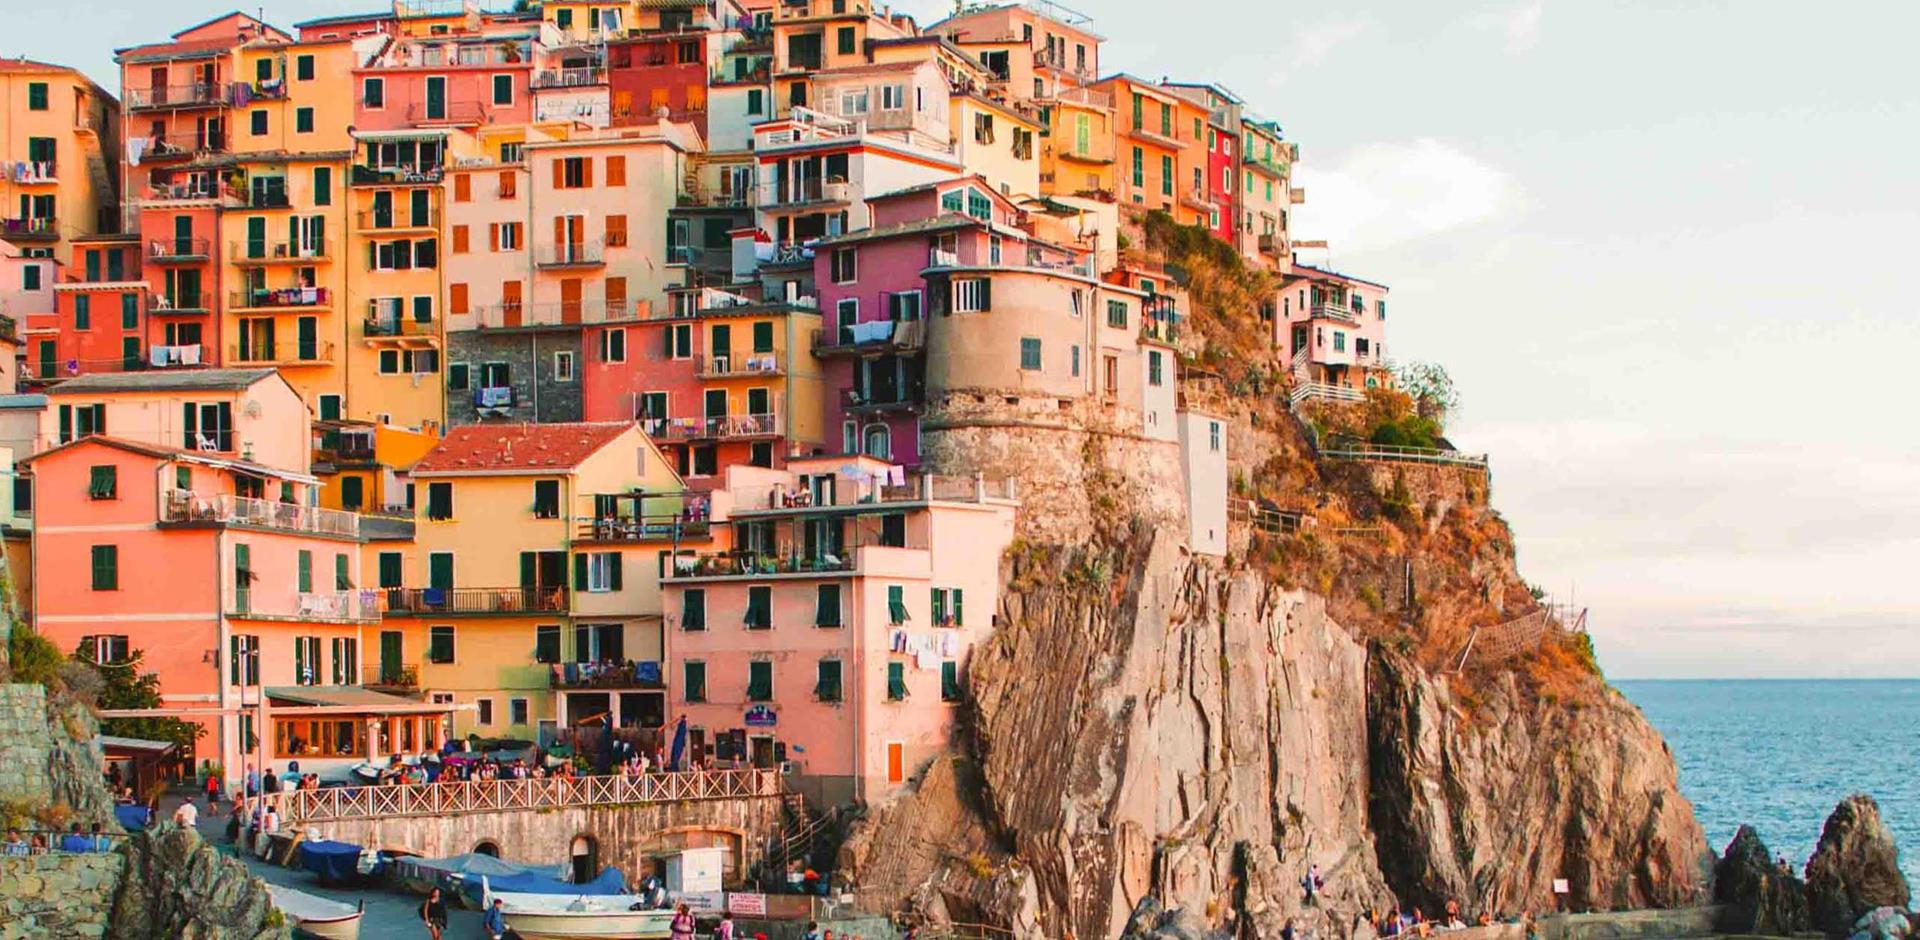 Houses on Italian cliffs